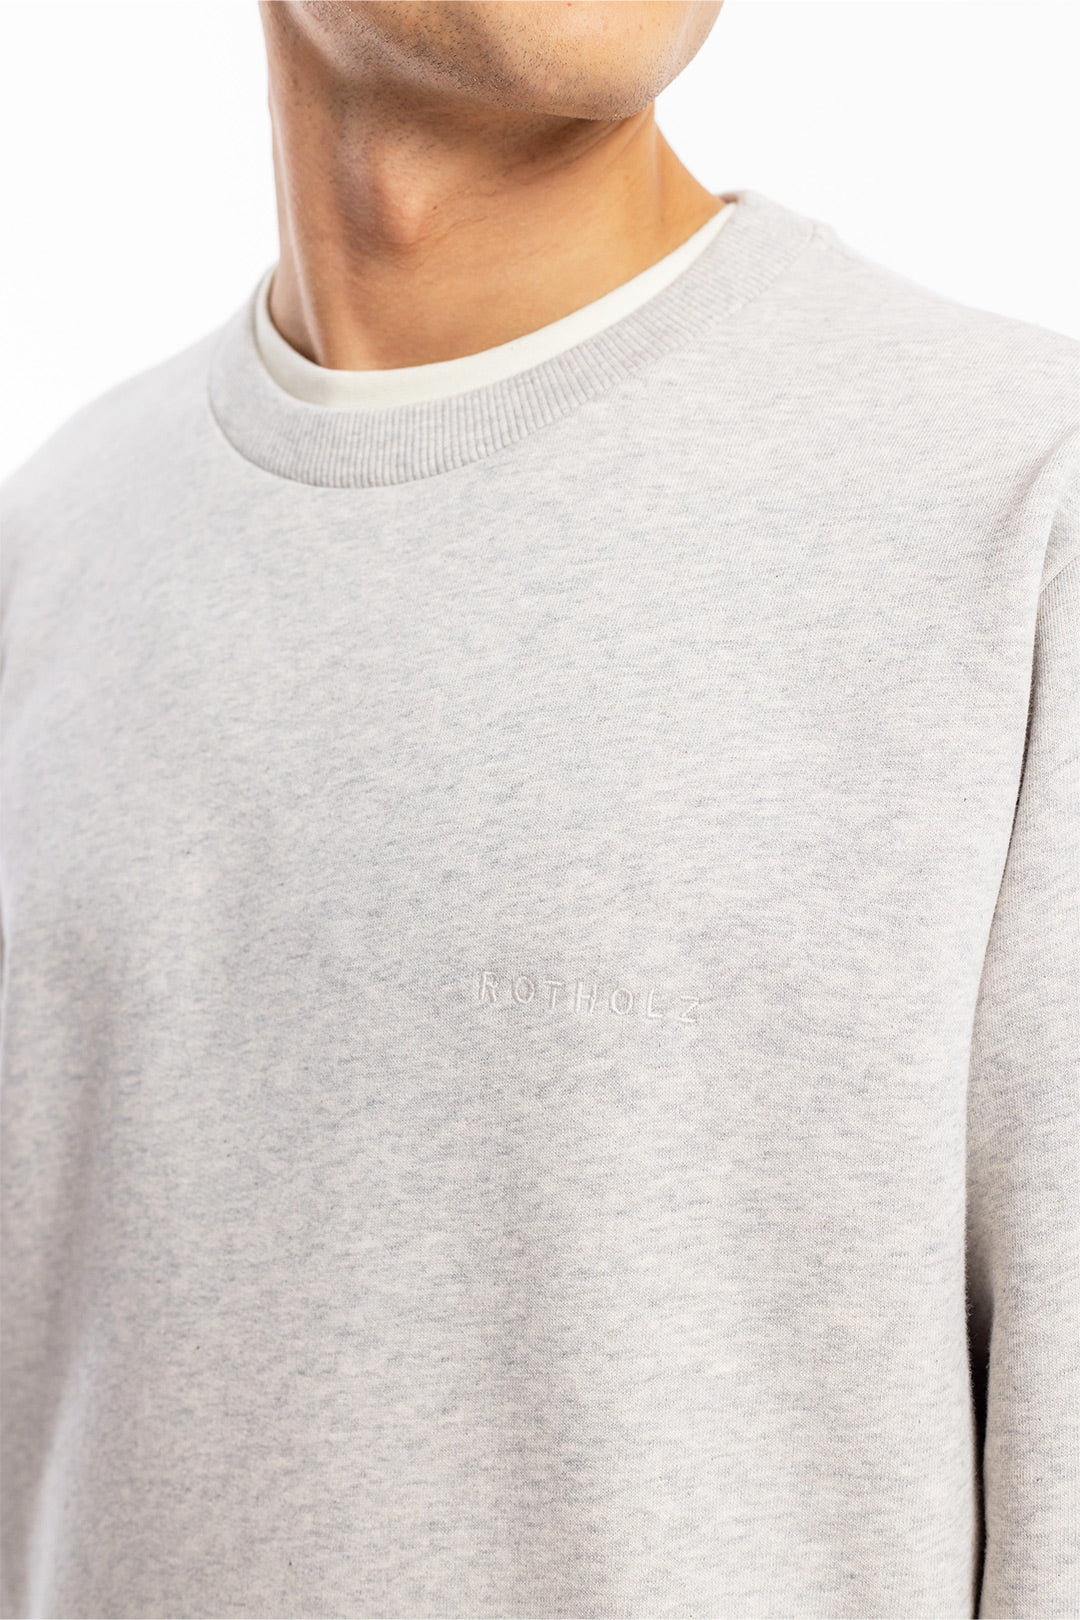 Hellgrauer Sweater Logo aus Bio-Baumwolle von Rotholz